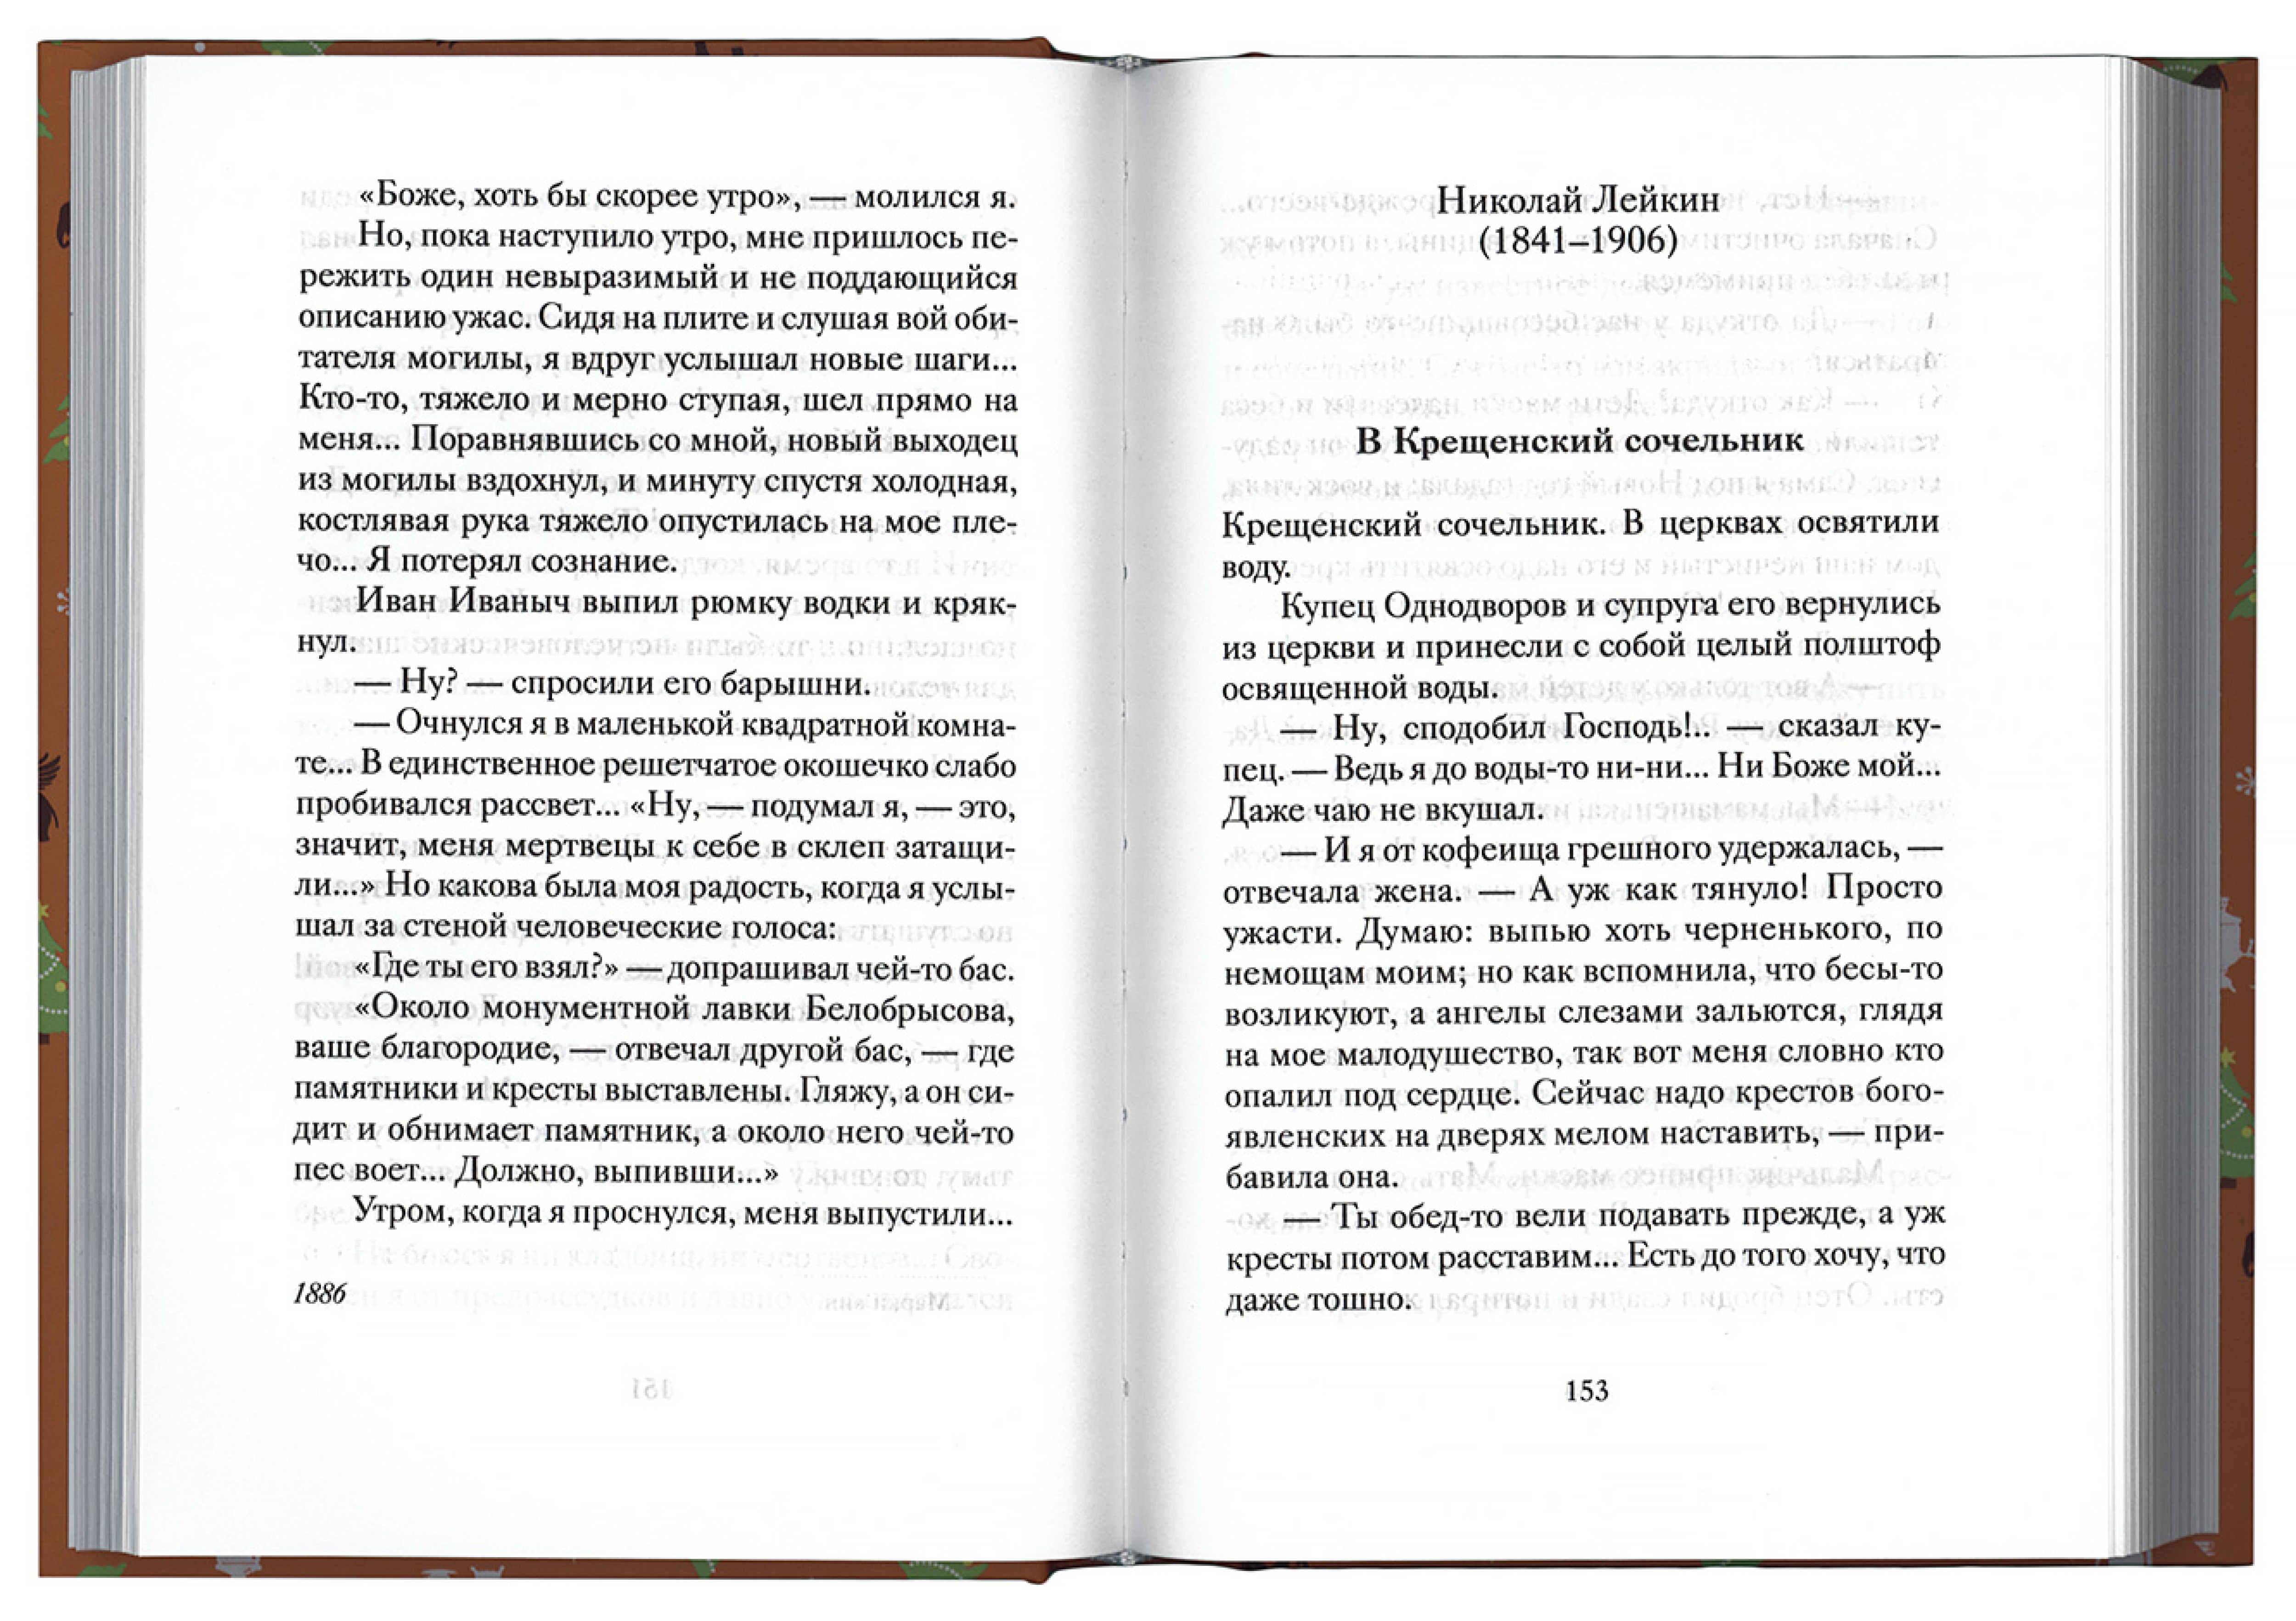 Веселые святочные истории русских писателей